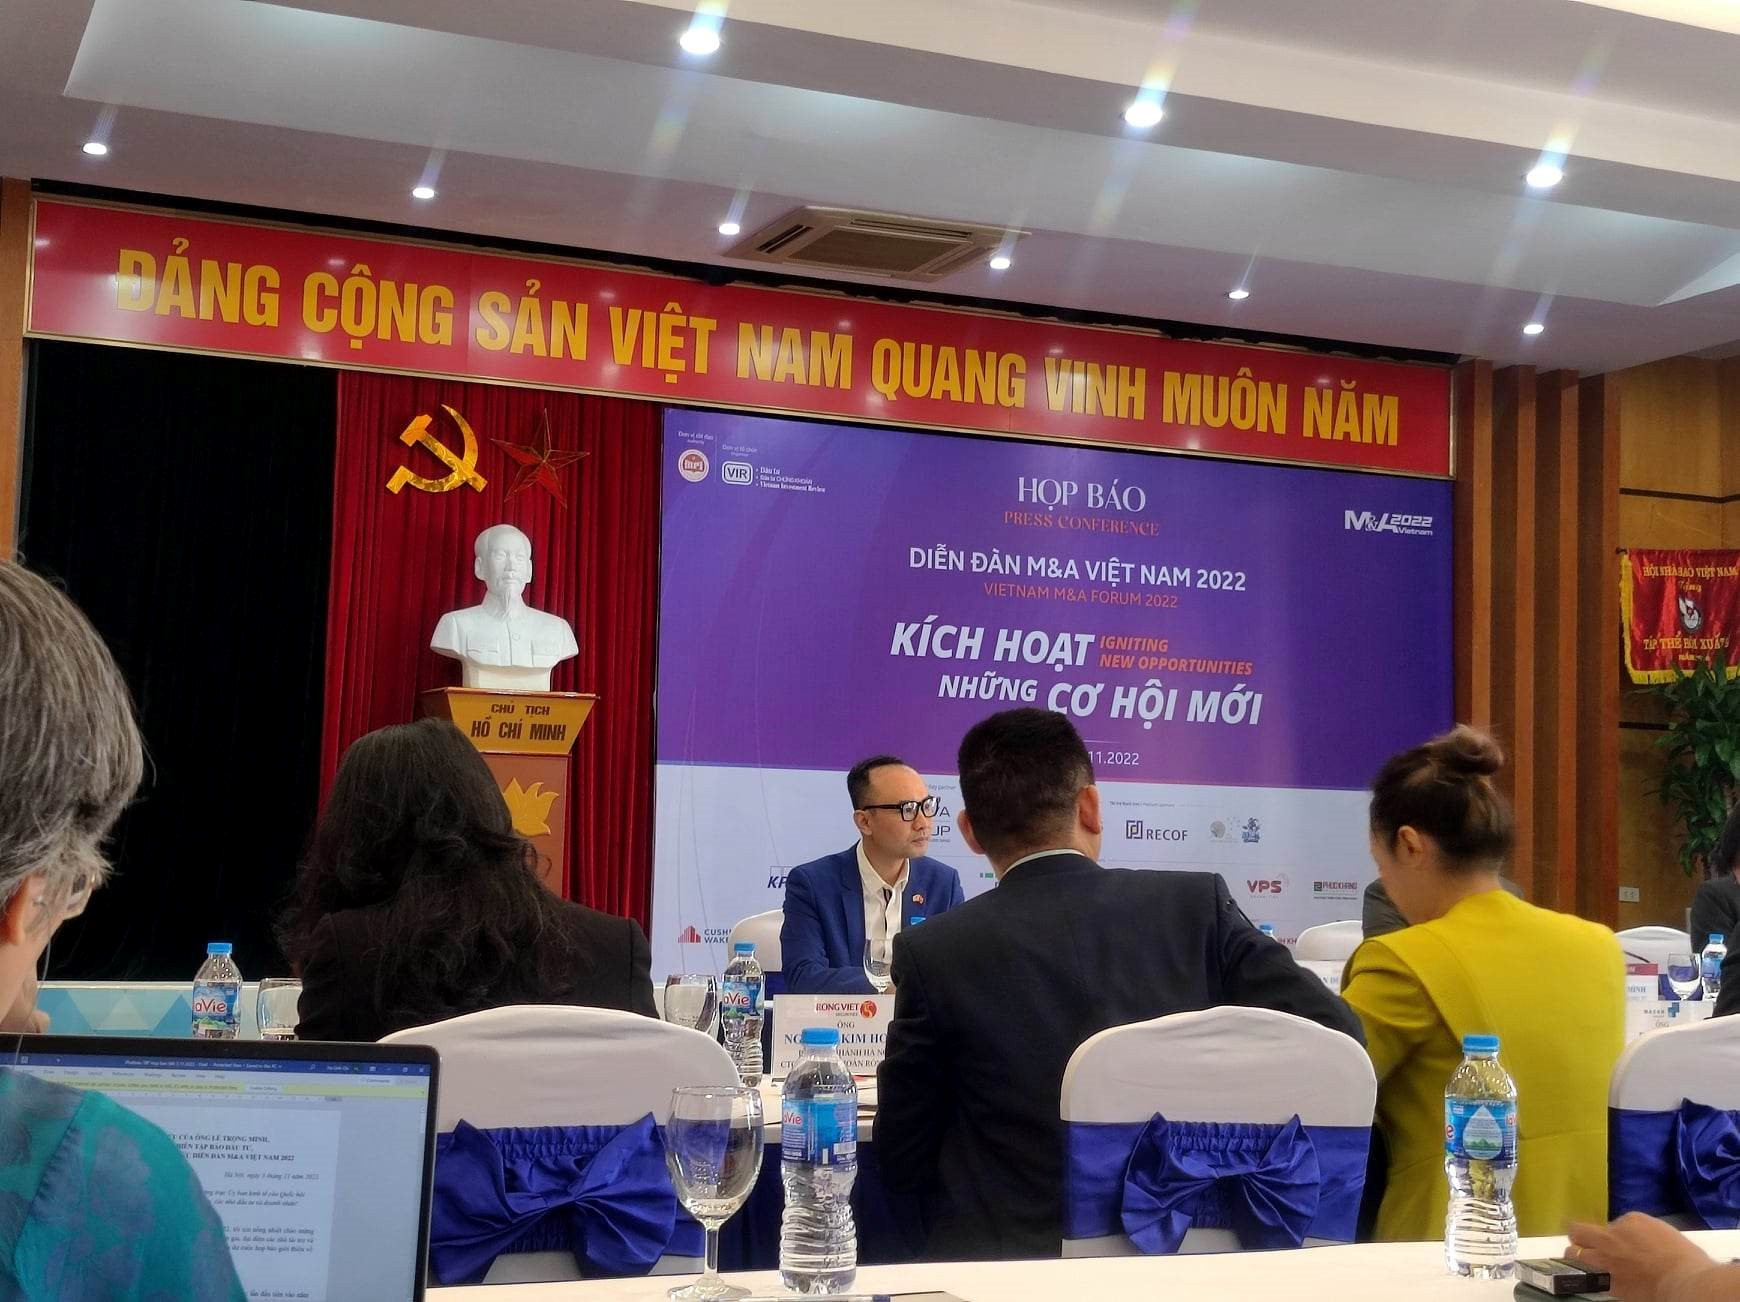 Diễn đàn Mua bán - Sáp nhập doanh nghiệp Việt Nam 2022: “Kích hoạt những cơ hội mới”